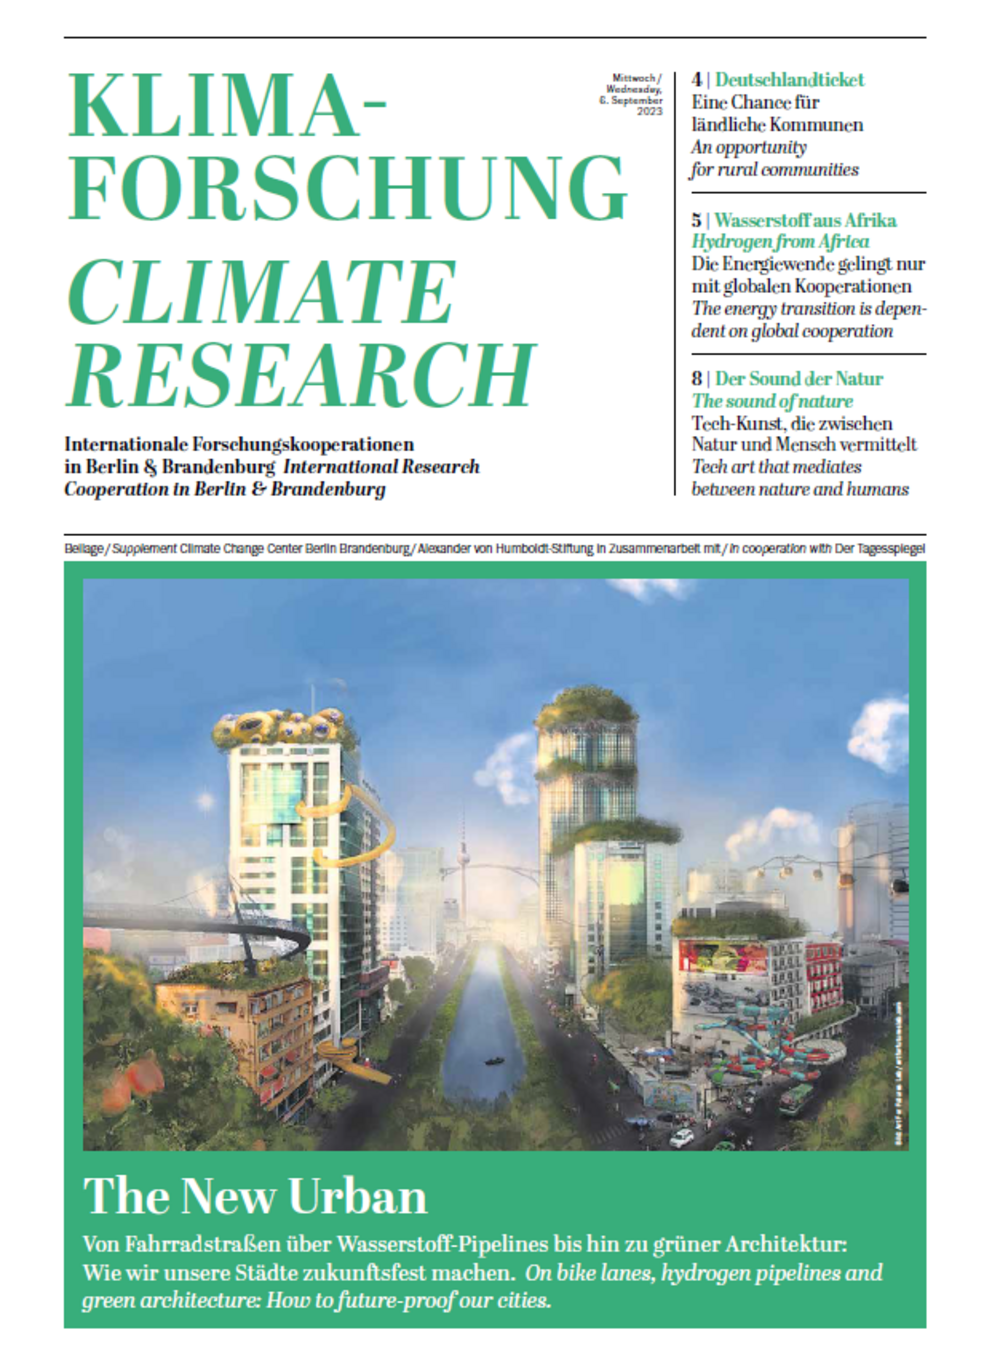 Titelblatt einer Beilage zum Tagesspiegel am 6.9.2023 mit einem von einer KI erstellten Bild von einer Stadt der Zukunft